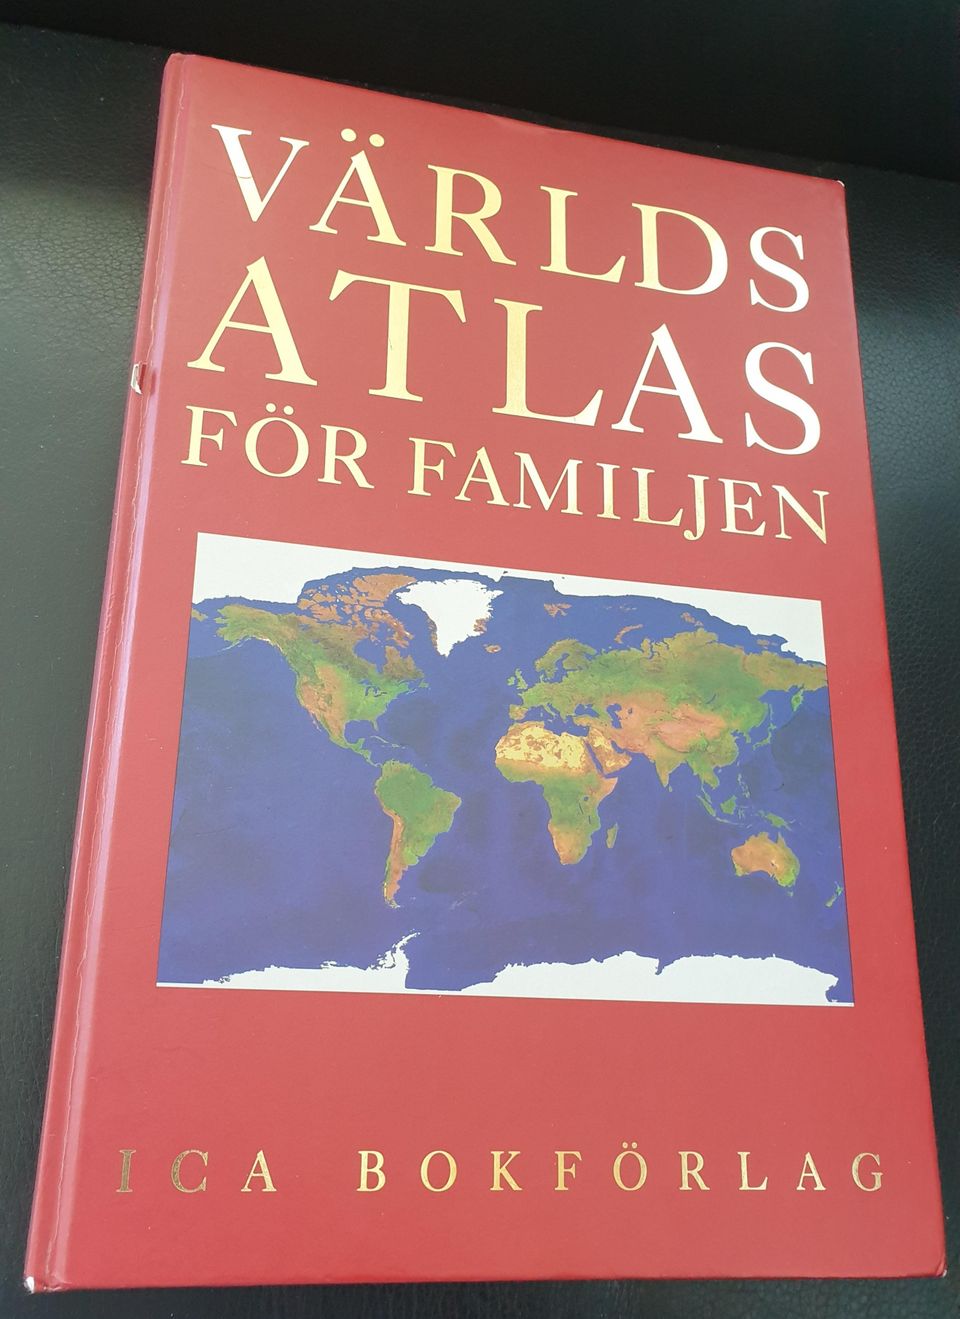 Världs atlas för familjen